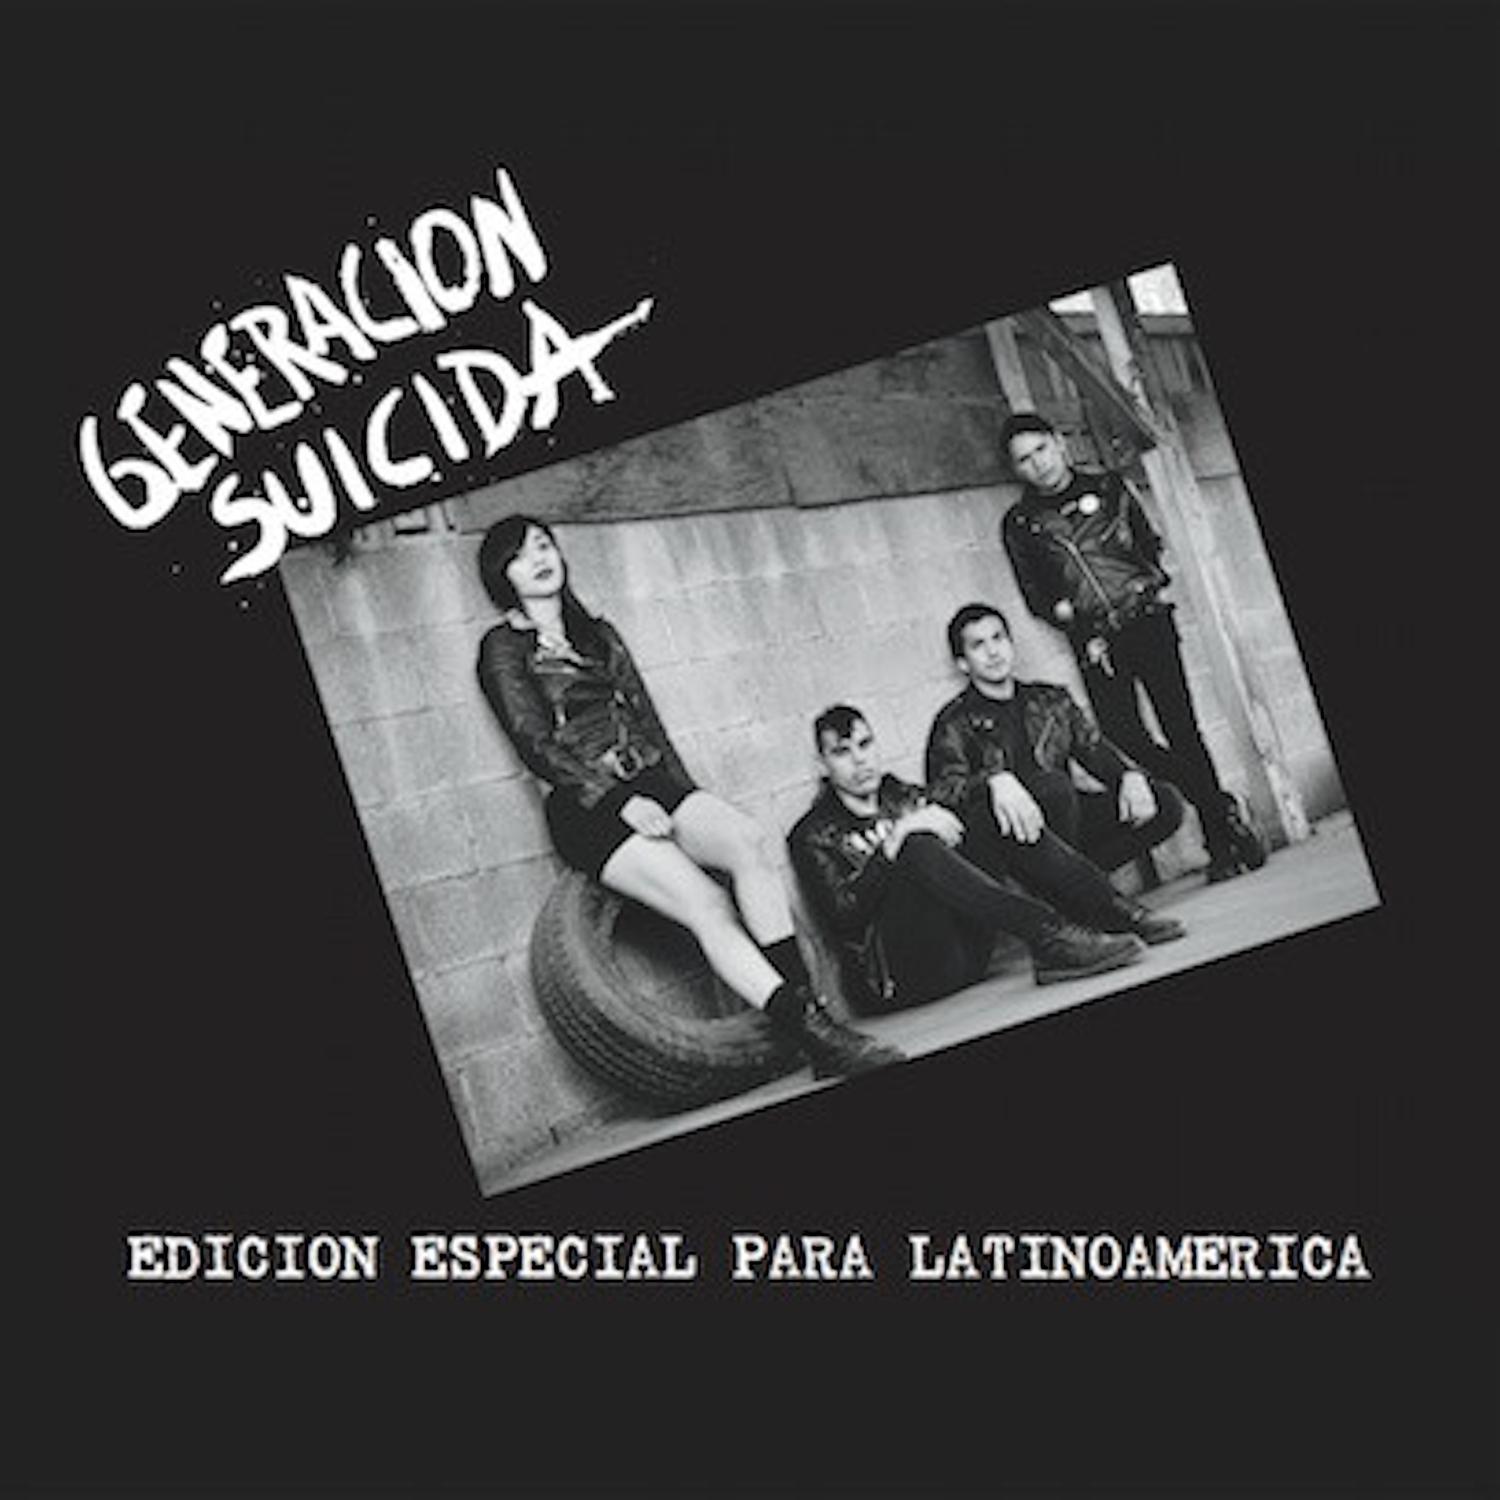 歌曲名《Criminale》，由 Generacion Suicida 演唱，收录于《Edicion Especial para Latinoamer...